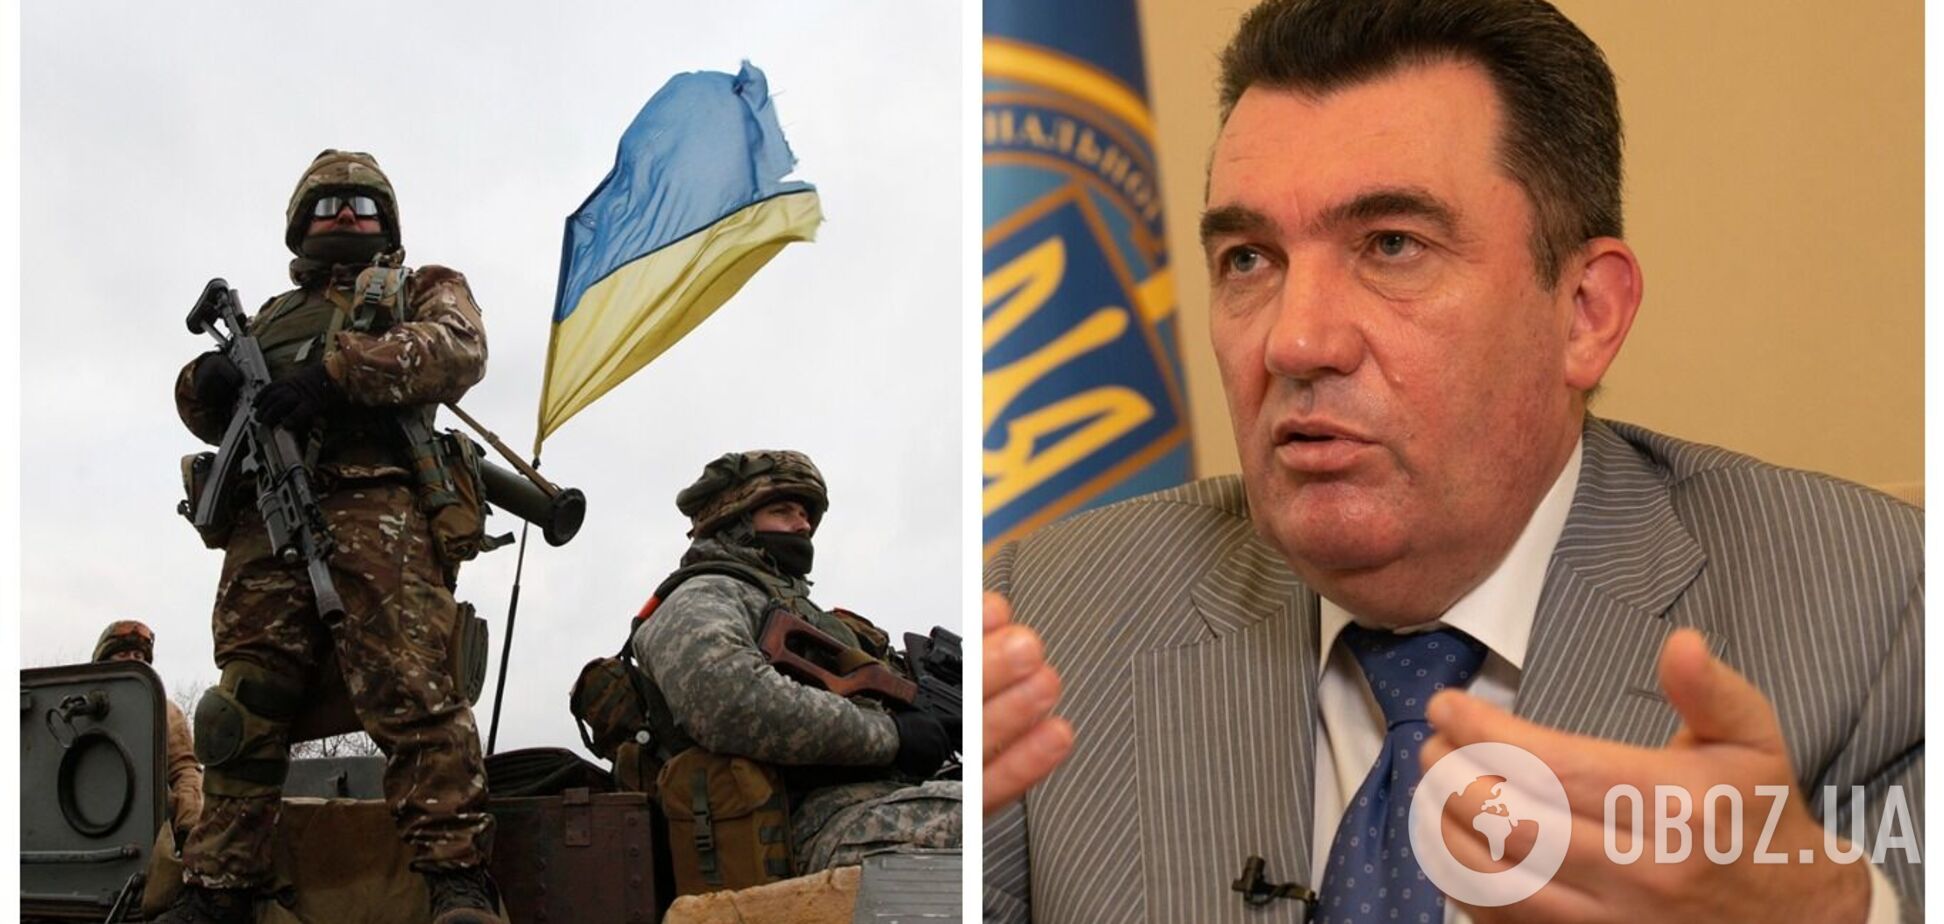 Данилов оценил вероятность введения военного положения в Украине: все будут действовать согласно своим инструкциям